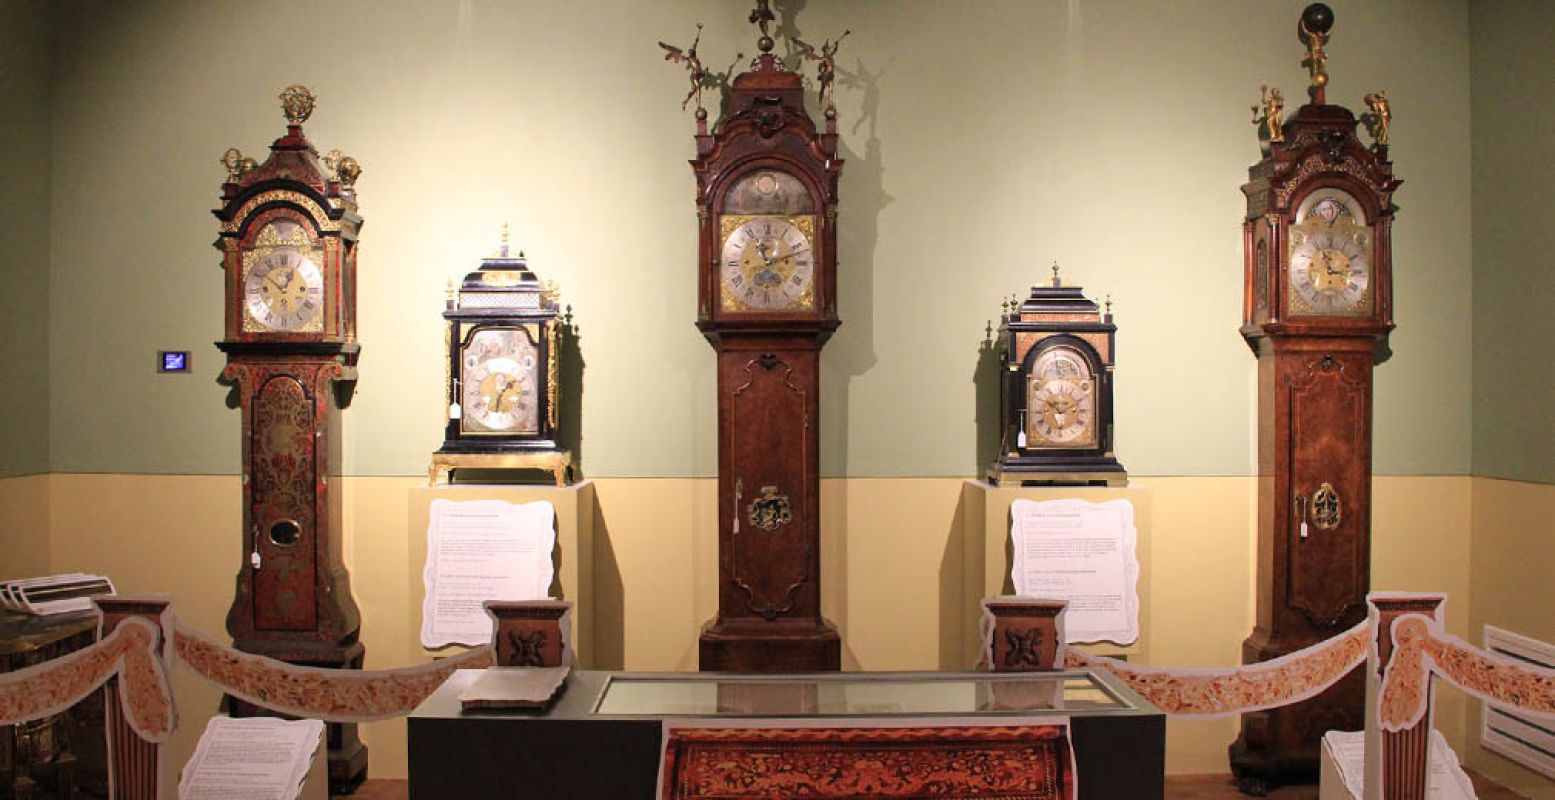 Bij de achttiende-eeuwse speelklokken horen schunnige teksten. Foto: Museum Speelklok.